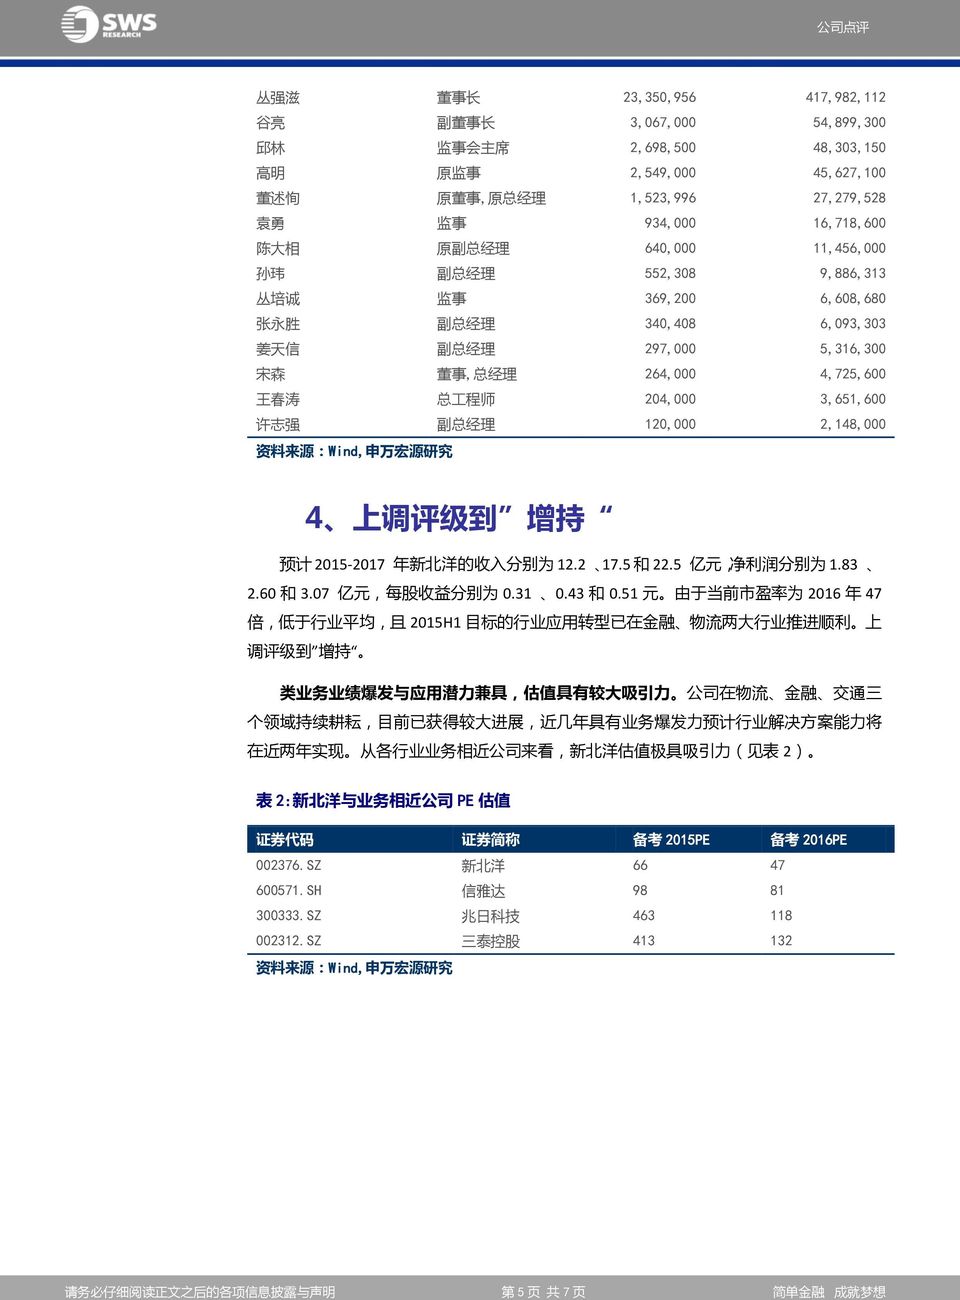 4,725,600 王 春 涛 总 工 程 师 204,000 3,651,600 许 志 强 副 总 经 理 120,000 2,148,000 资 料 来 源 :Wind, 申 万 宏 源 研 究 4 上 调 评 级 到 增 持 预 计 2015-2017 年 新 北 洋 的 收 入 分 别 为 12.2 17.5 和 22.5 亿 元, 净 利 润 分 别 为 1.83 2.60 和 3.